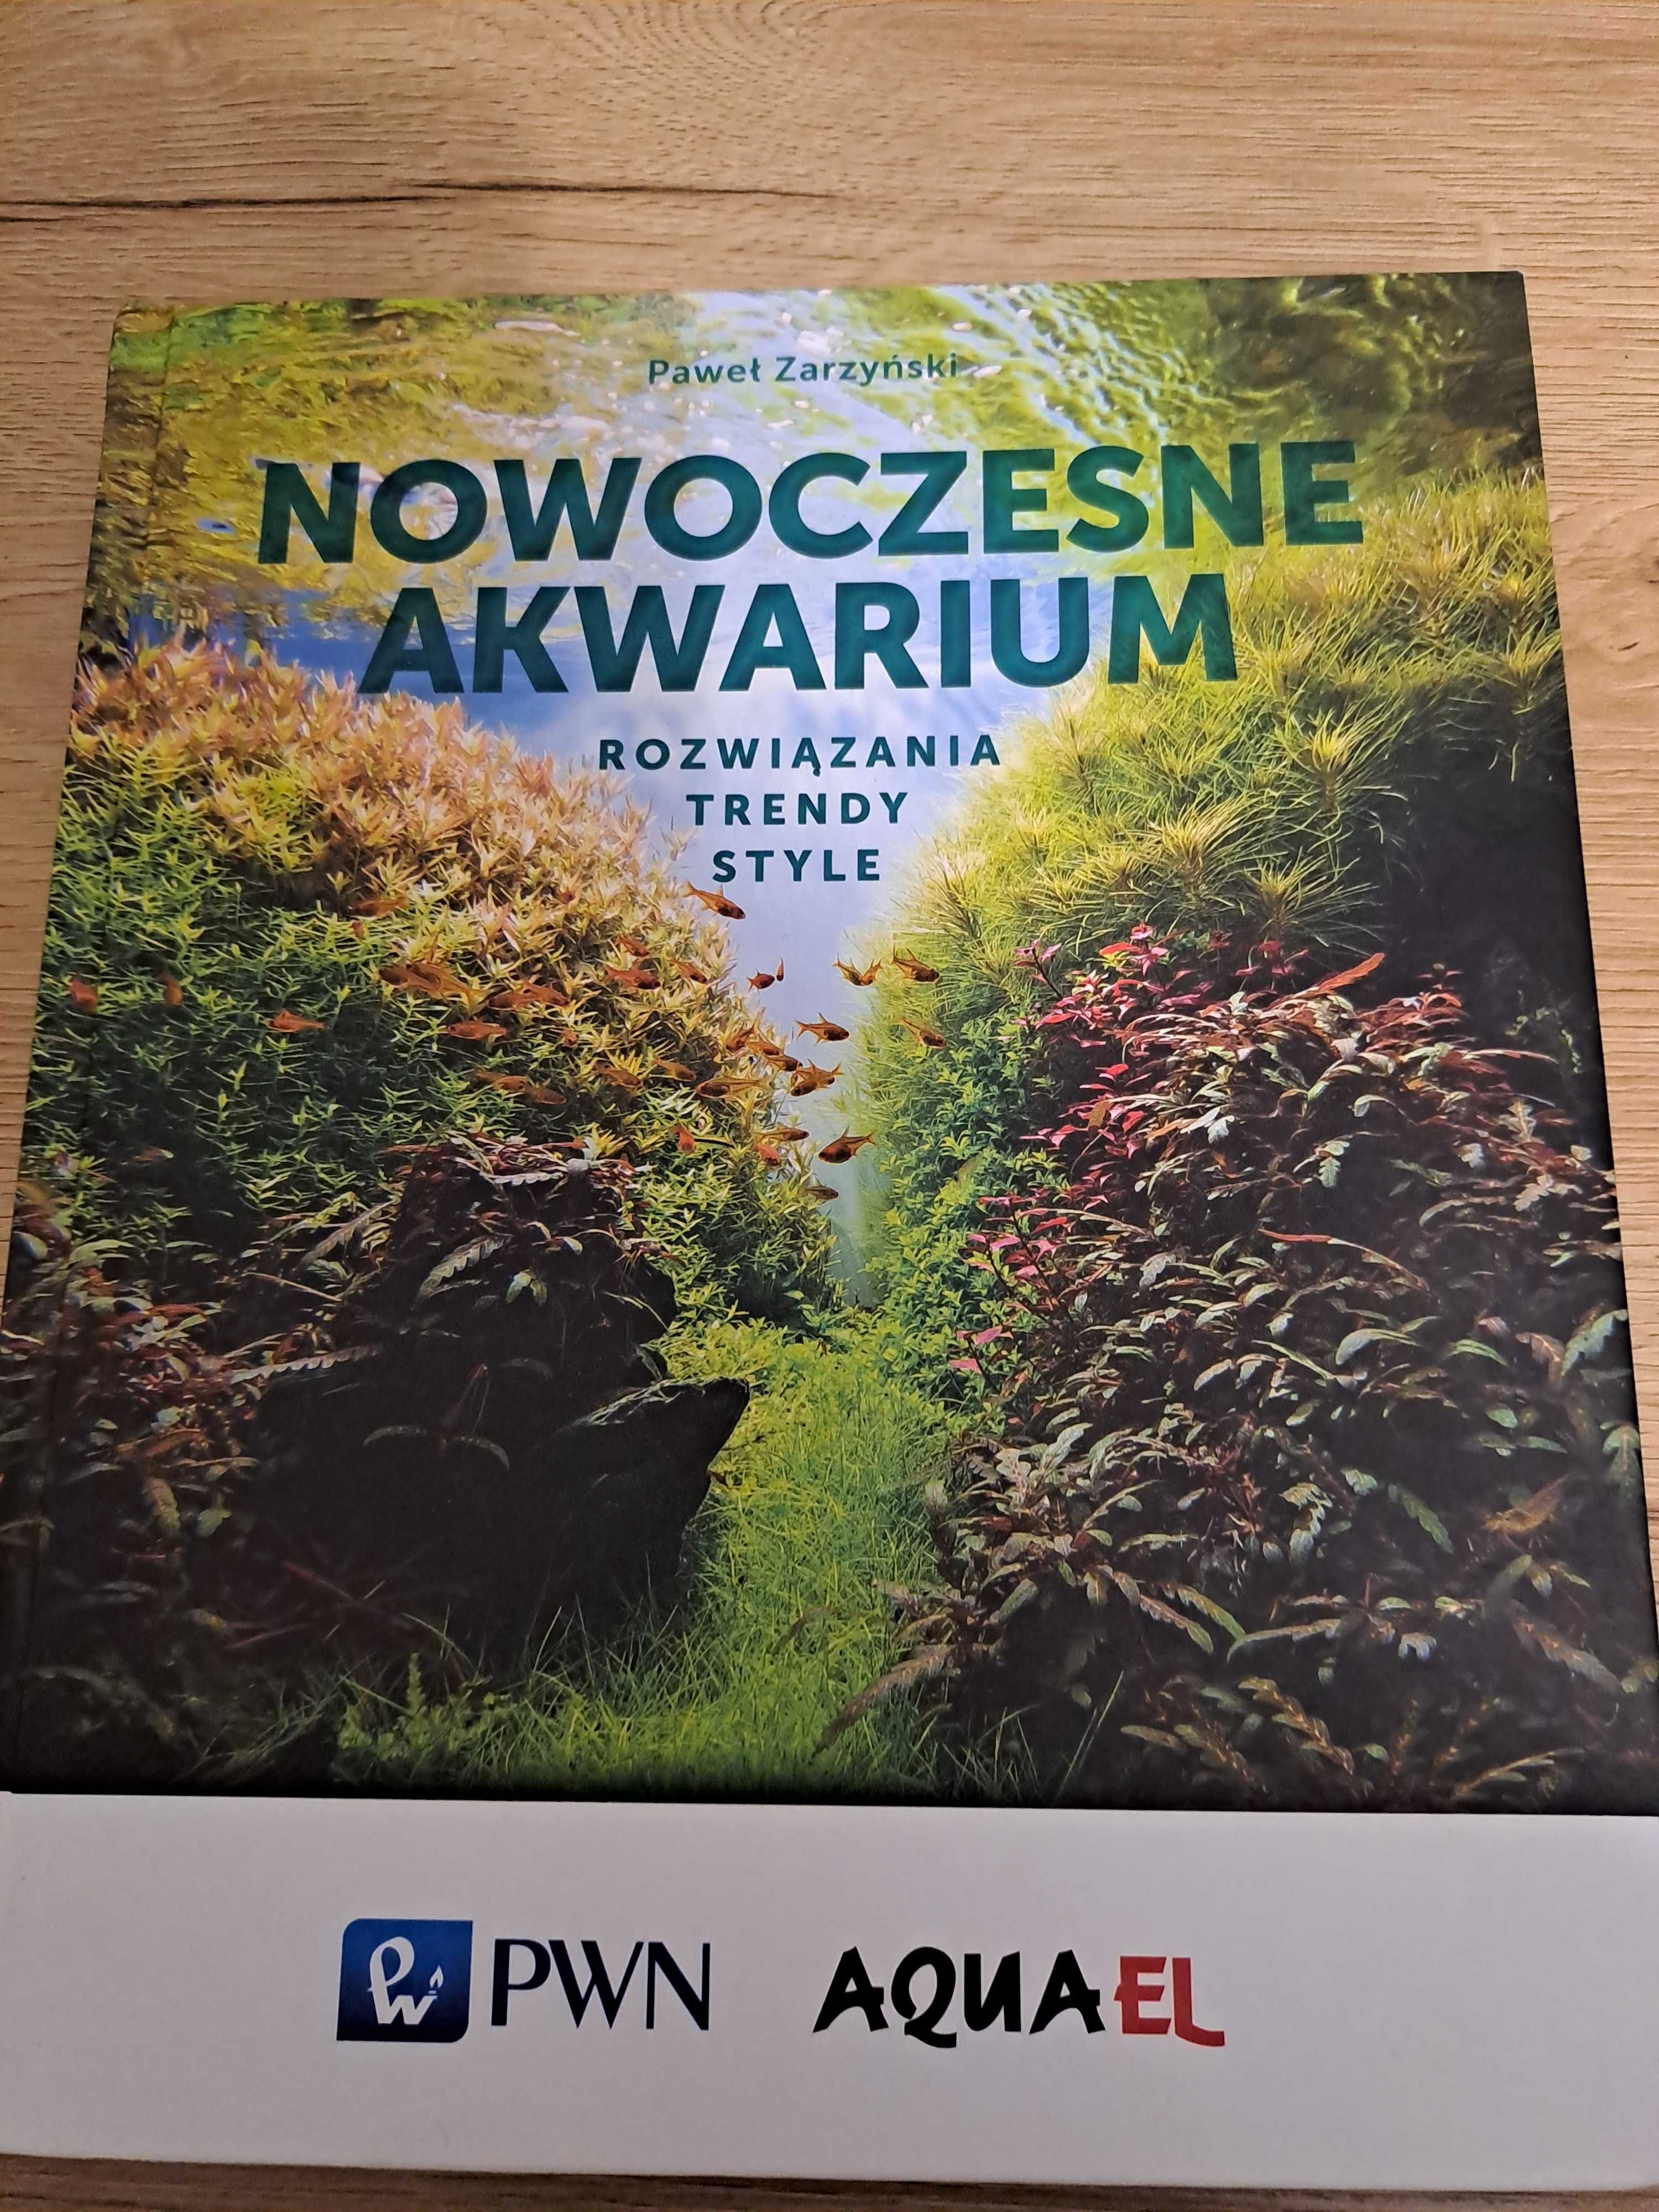 Nowoczesne akwarium - Paweł Zarzyński, książka